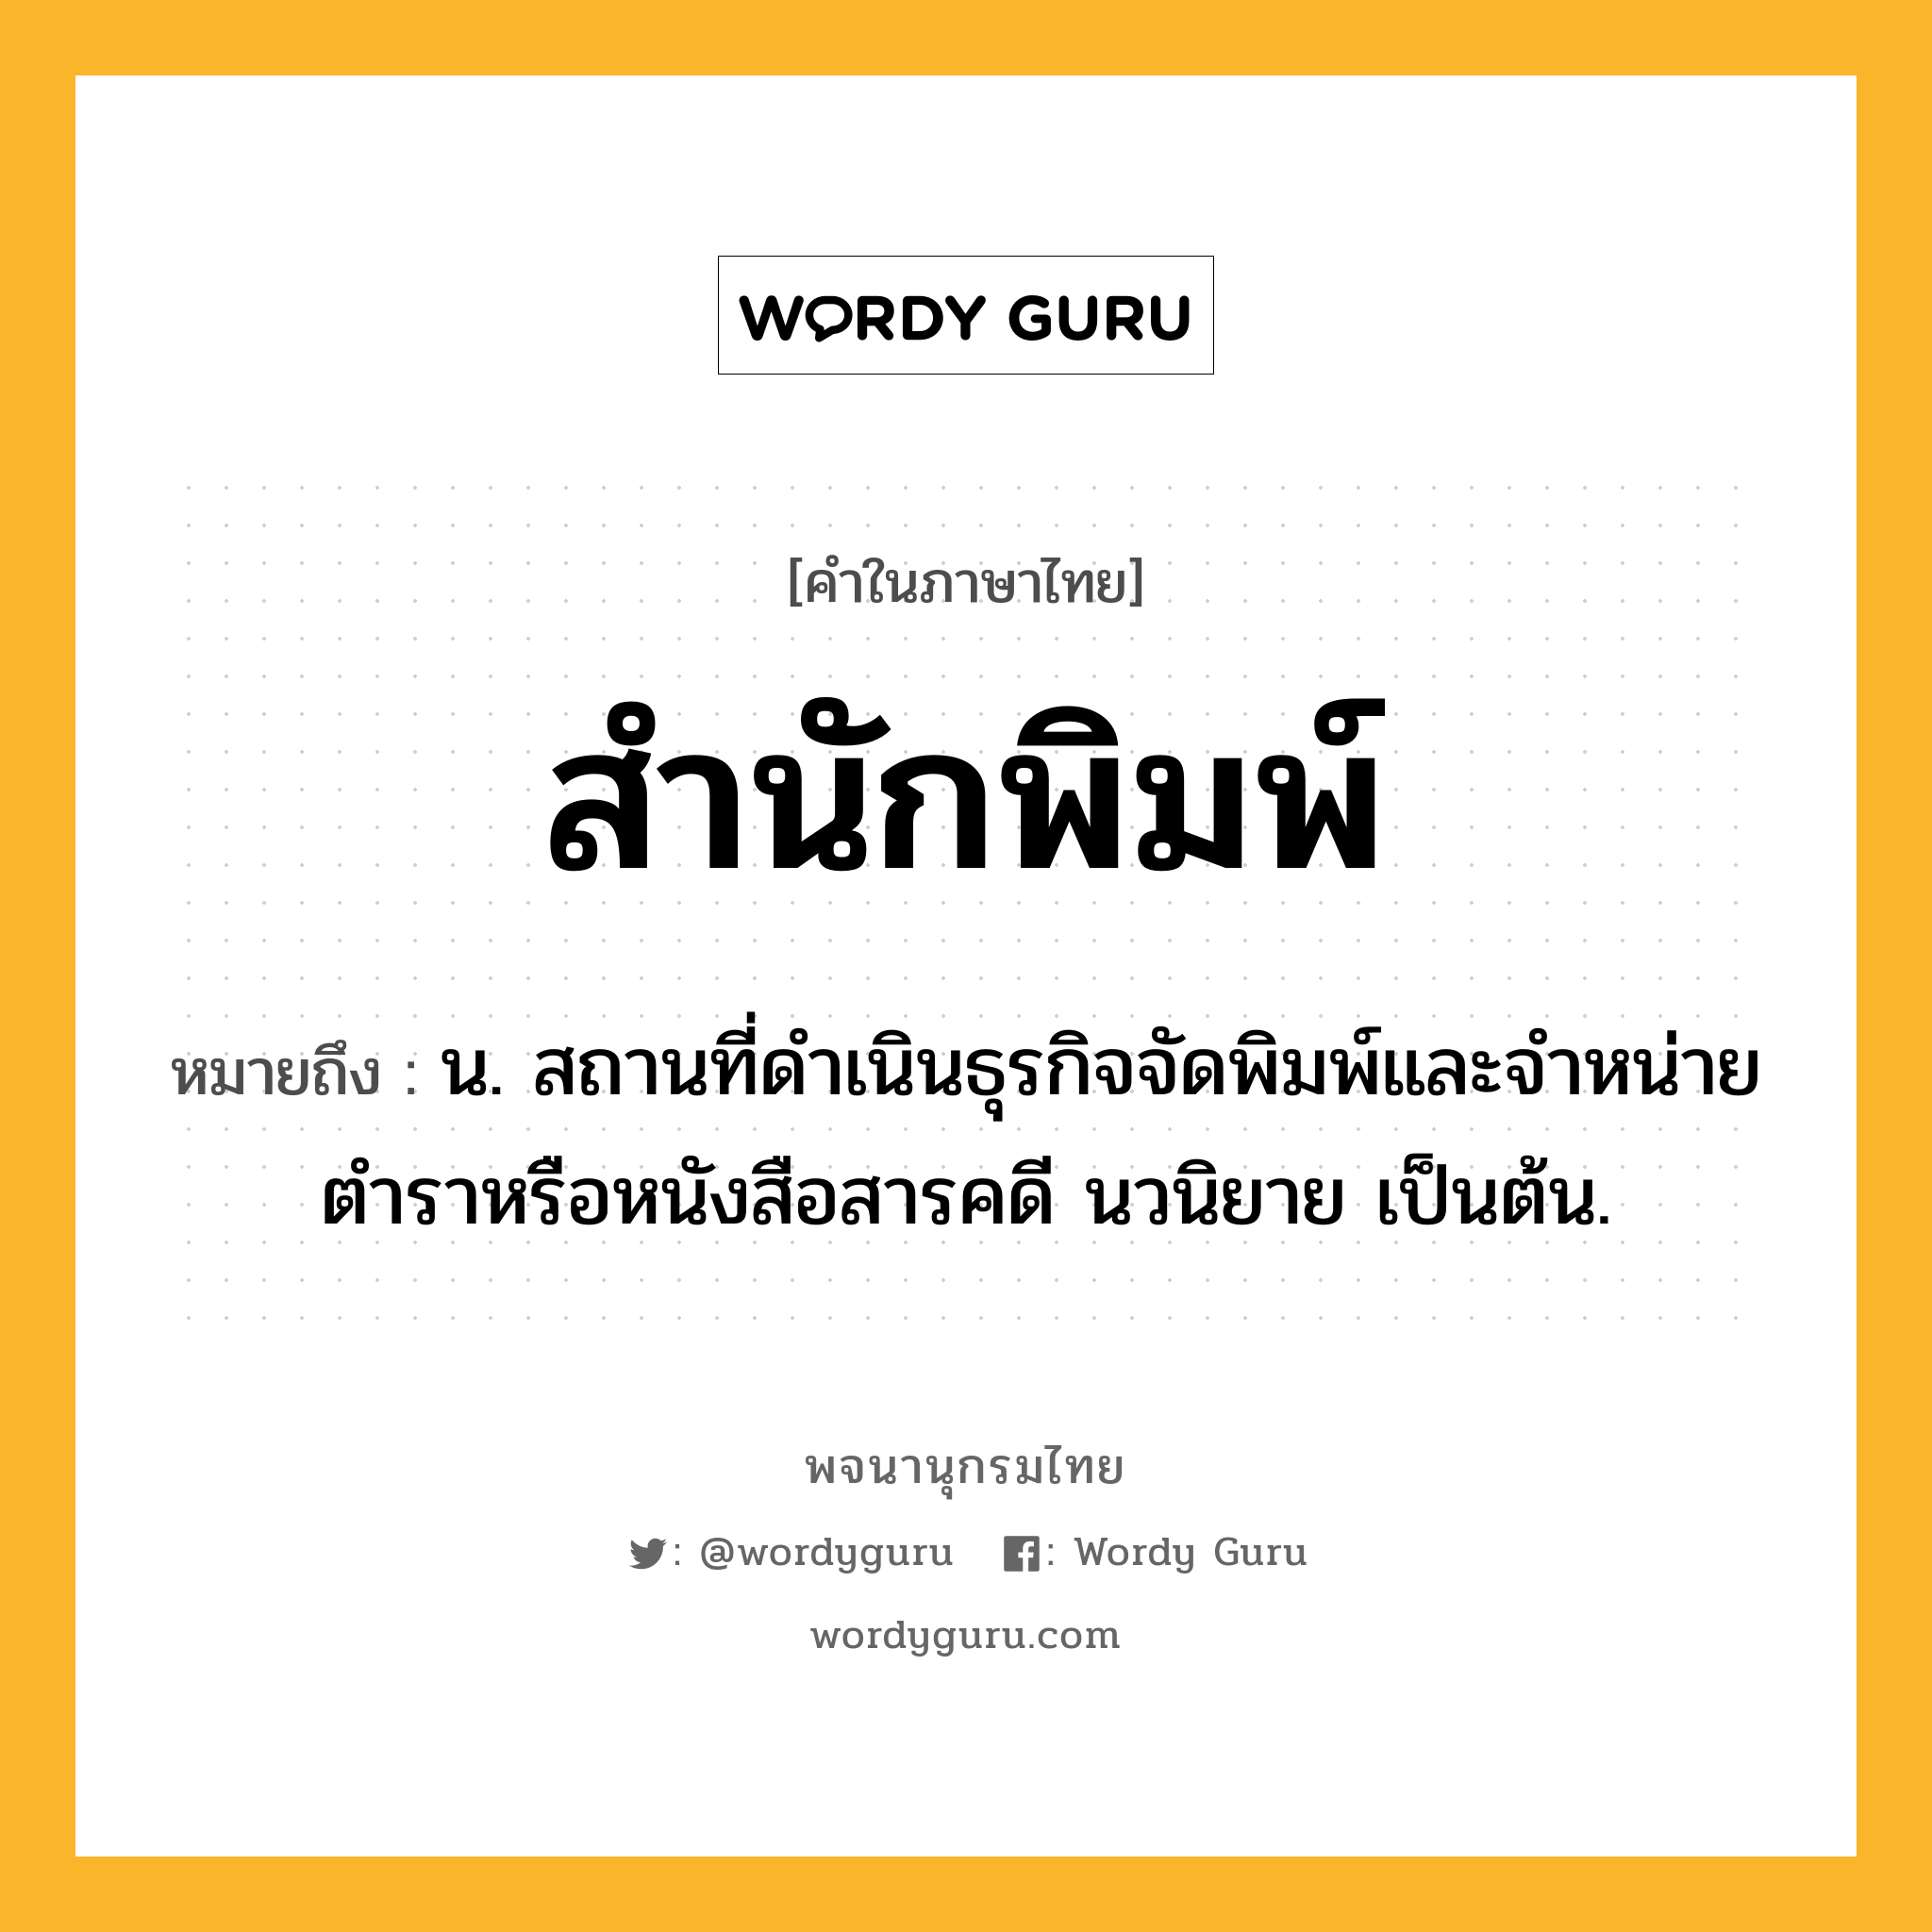 สำนักพิมพ์ หมายถึงอะไร?, คำในภาษาไทย สำนักพิมพ์ หมายถึง น. สถานที่ดำเนินธุรกิจจัดพิมพ์และจำหน่ายตำราหรือหนังสือสารคดี นวนิยาย เป็นต้น.